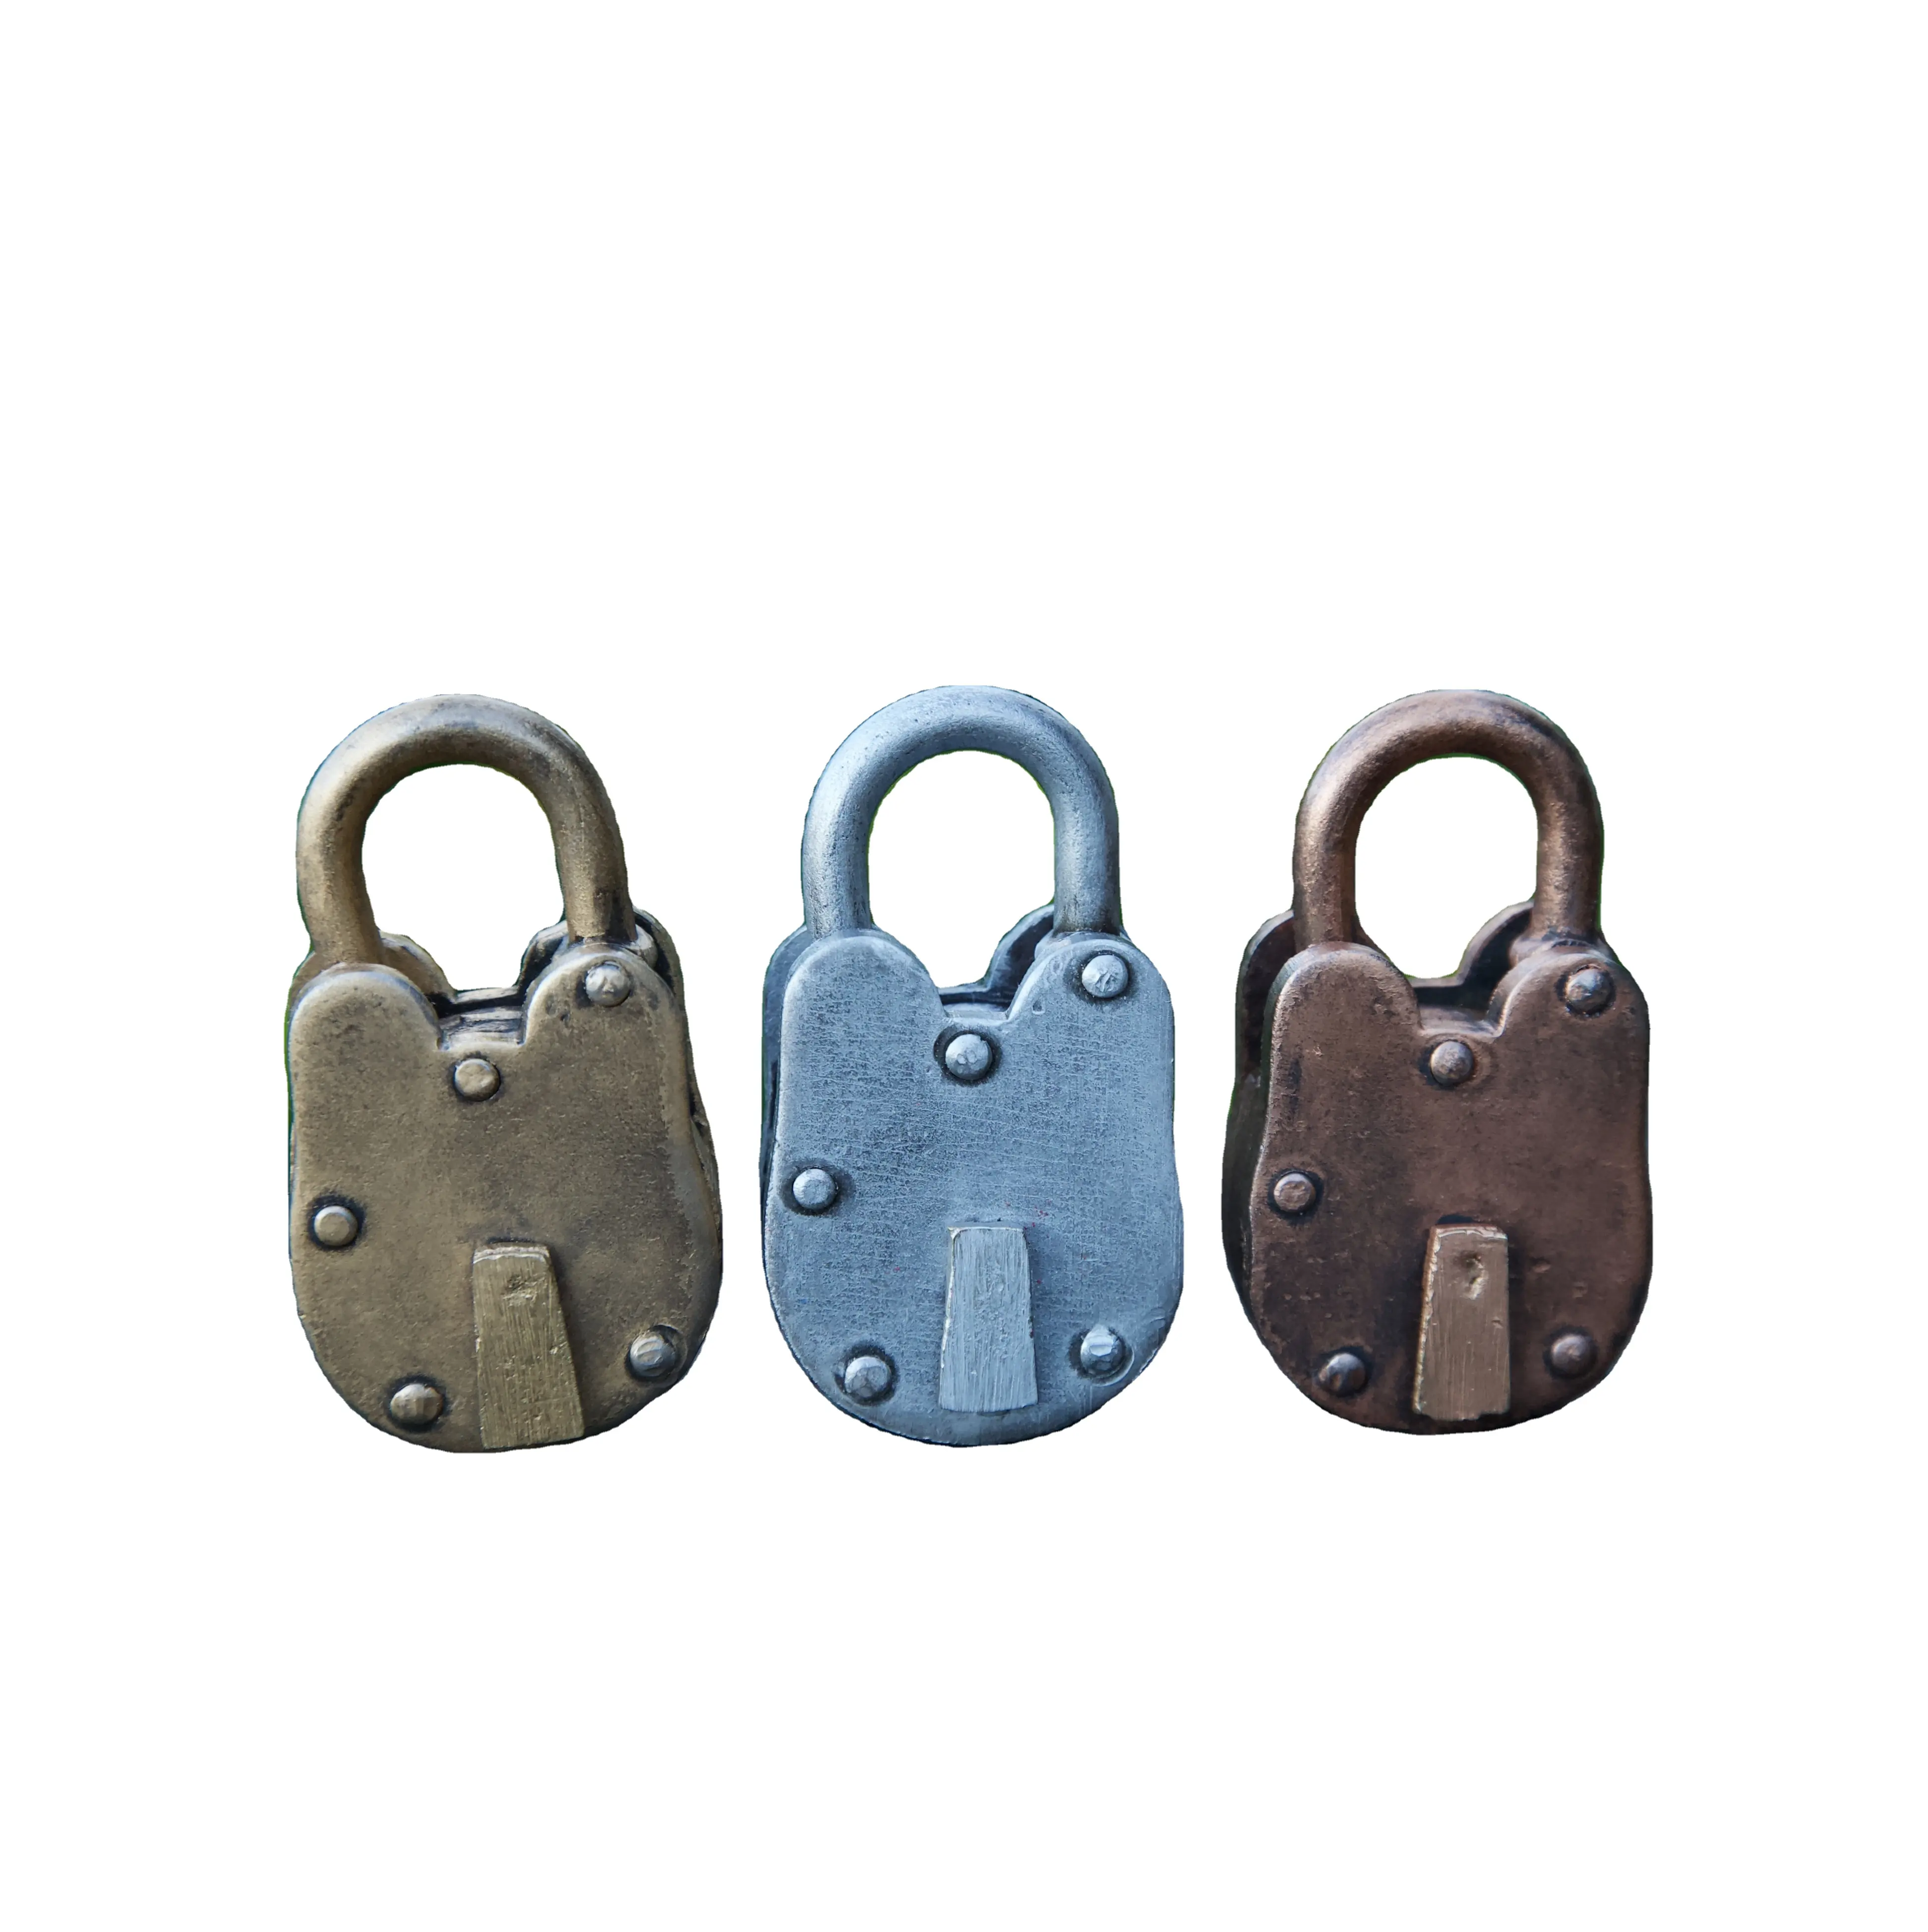 Frais et de haute qualité Antique Pad Lock Key Serrures de porte élégantes avec 2 clés Condition de fonctionnement Utilisation pour la sécurité Prix bon marché